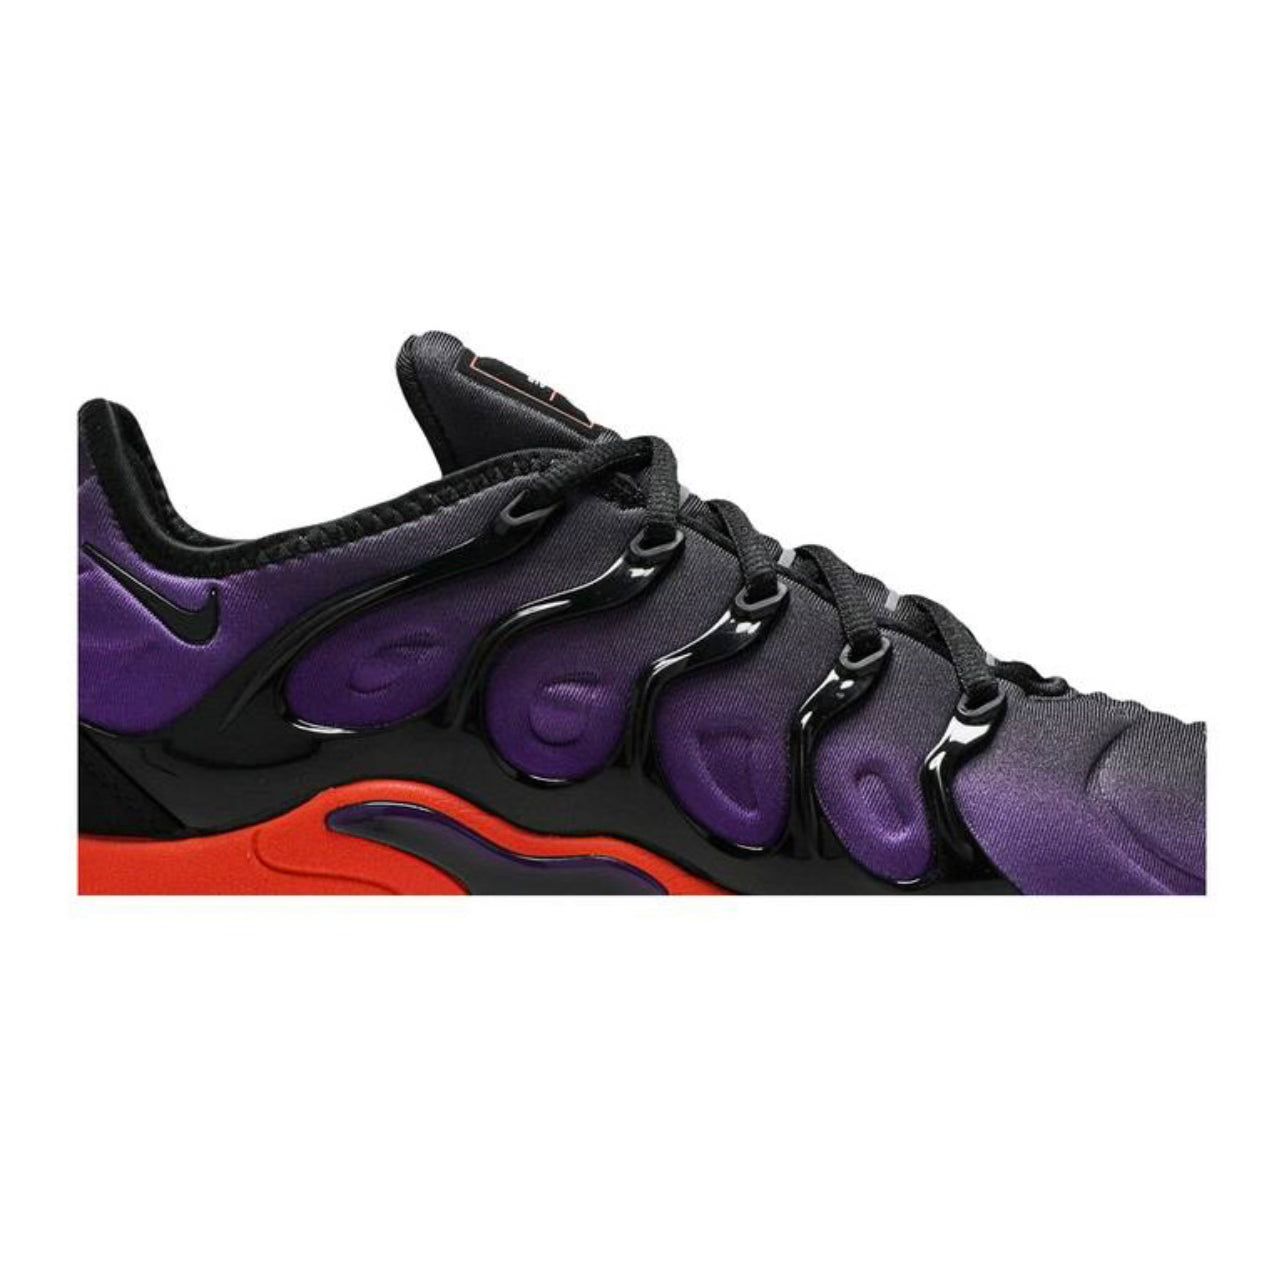 Nike Air Vapormax Plus "Voltage Purple"